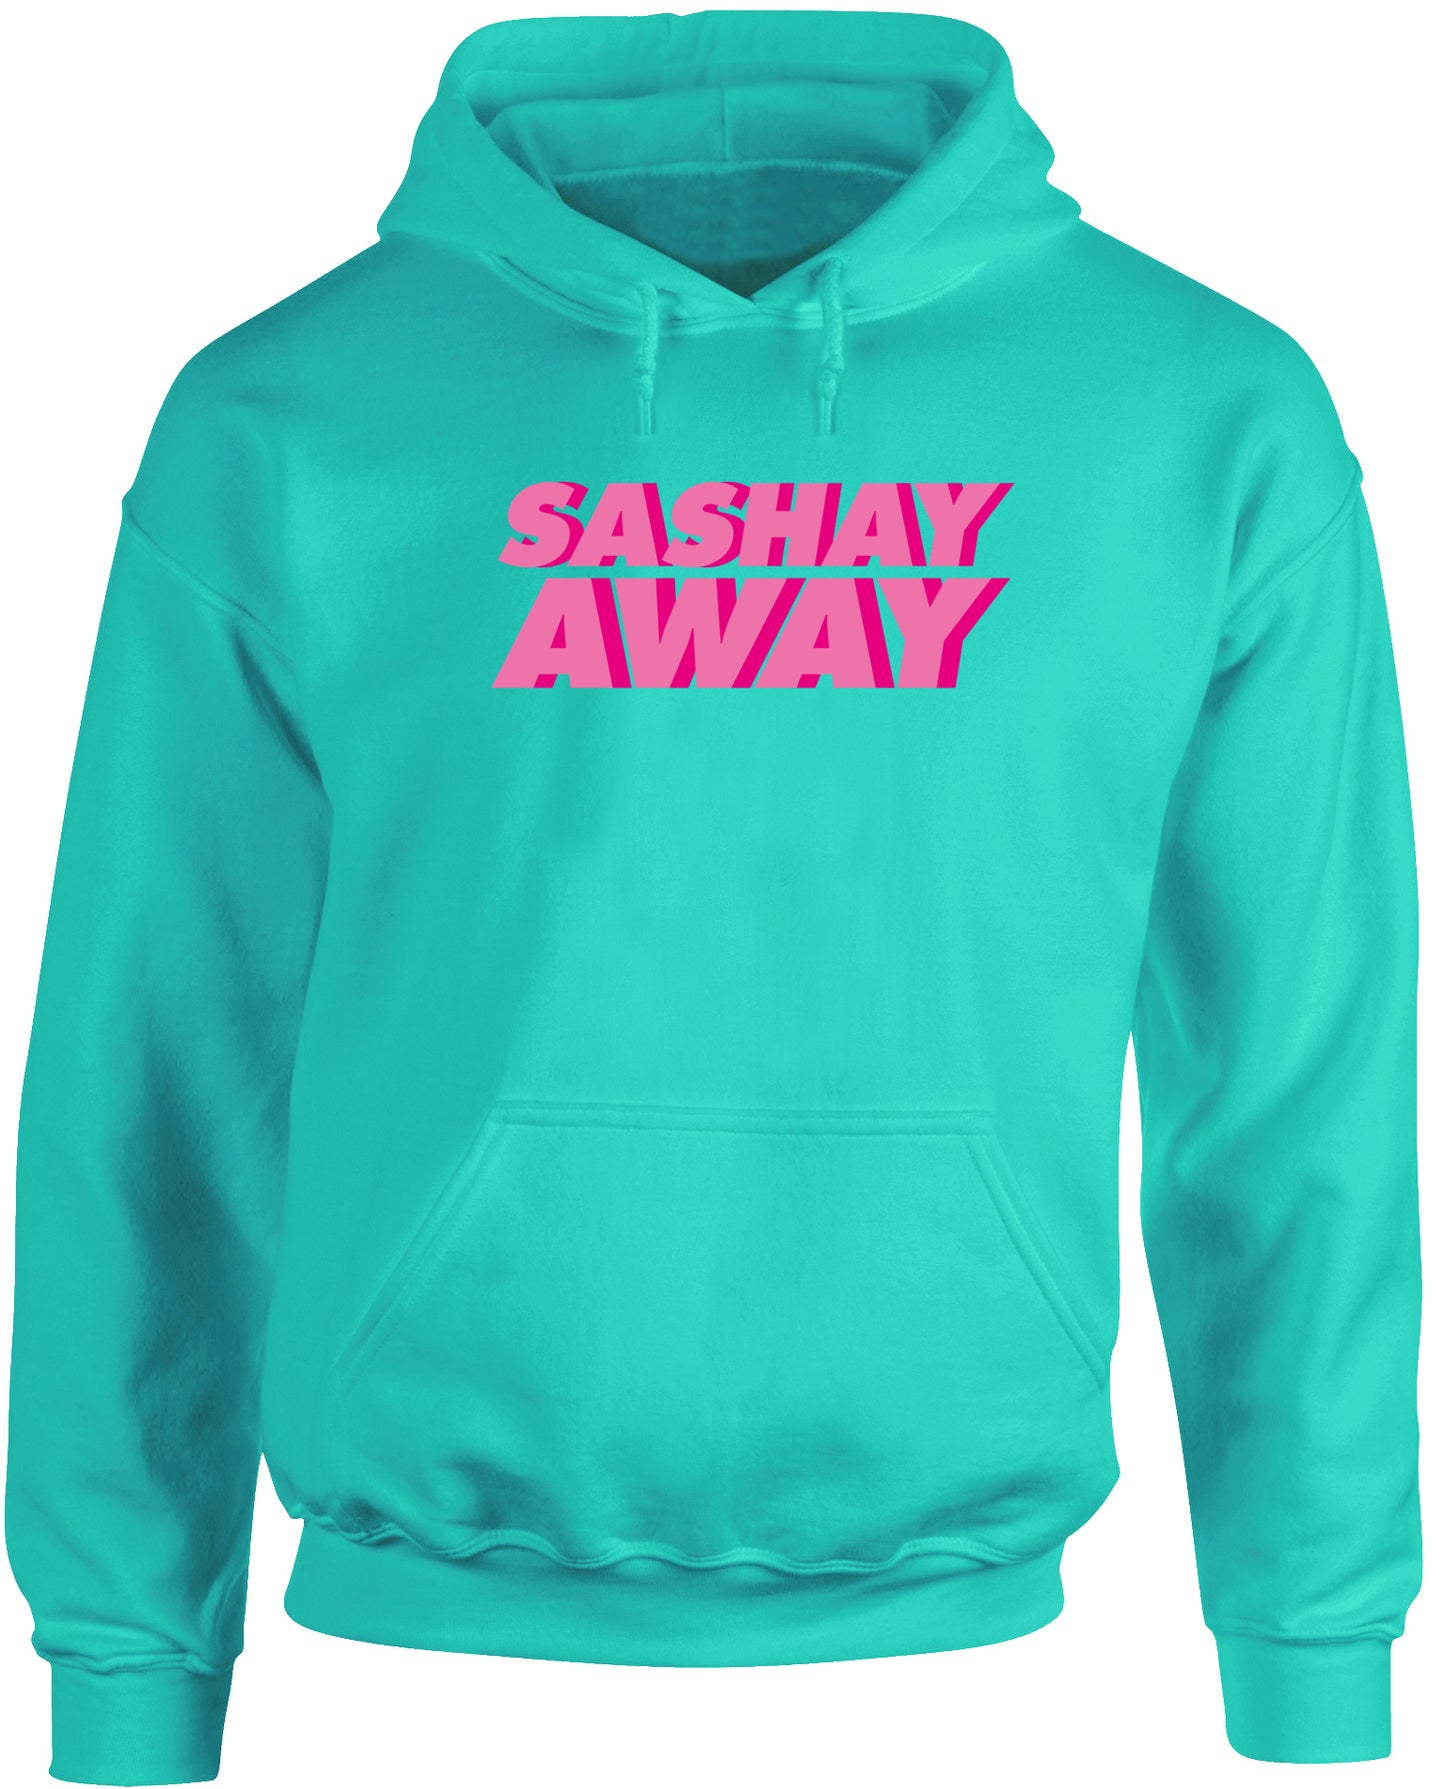 Sashay away unisex Hoodie hooded top